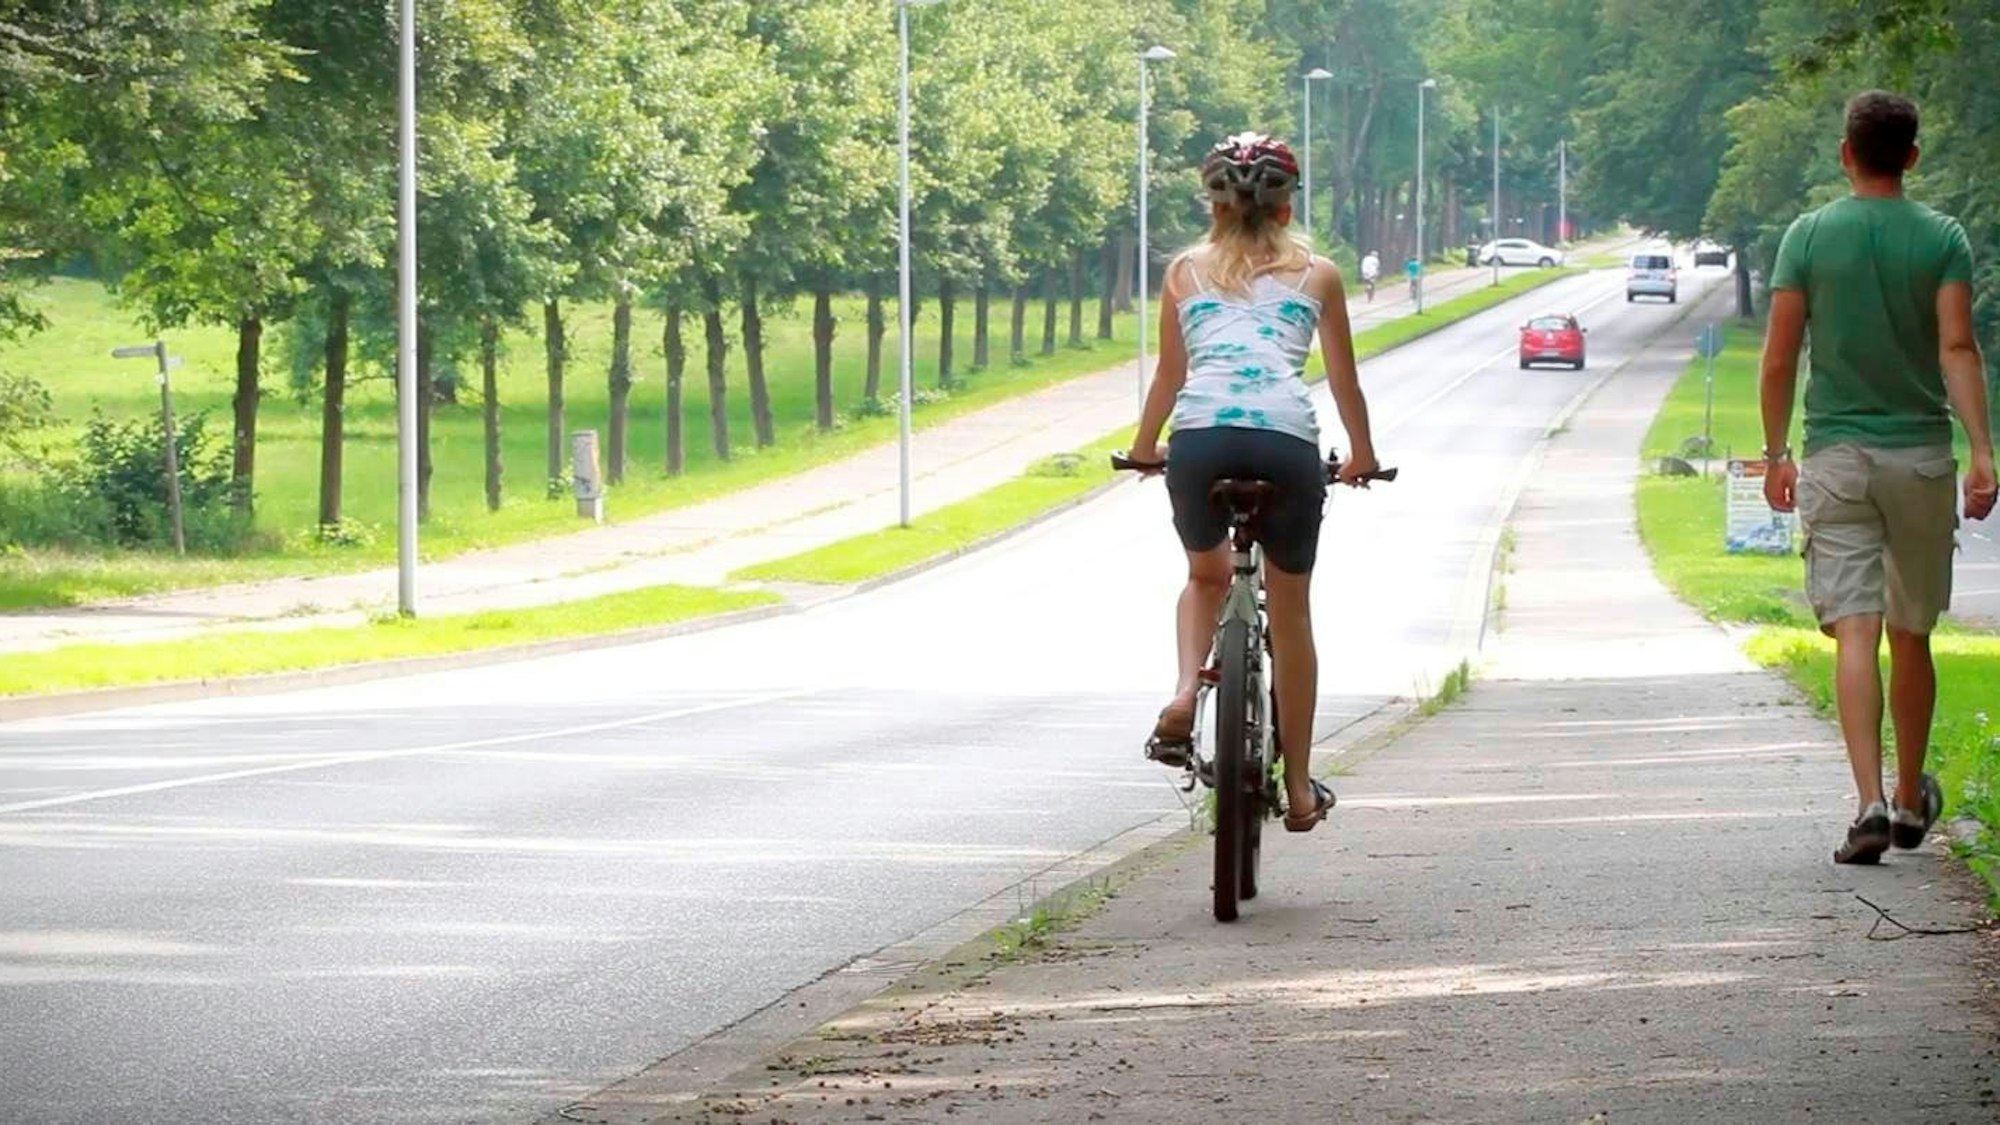 Mit dem Rad sicher durch den Straßenverkehr. Eine Radfahrerin und ein Fußgänger zeigen wie Konflikte vermieden werden können